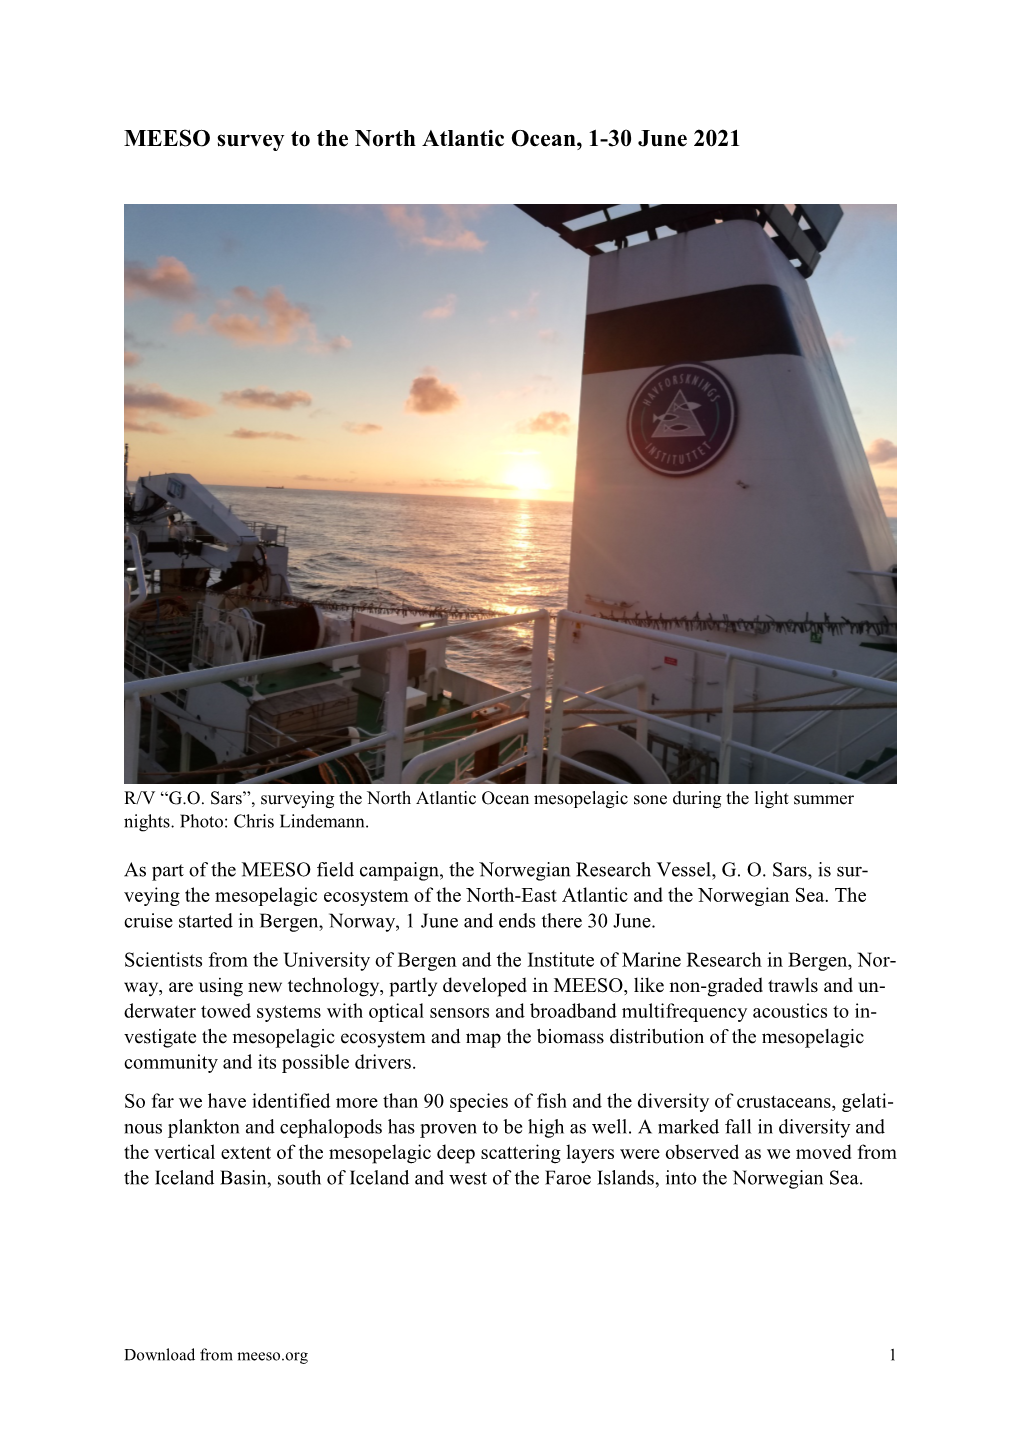 MEESO Survey to the North Atlantic Ocean, 1-30 June 2021